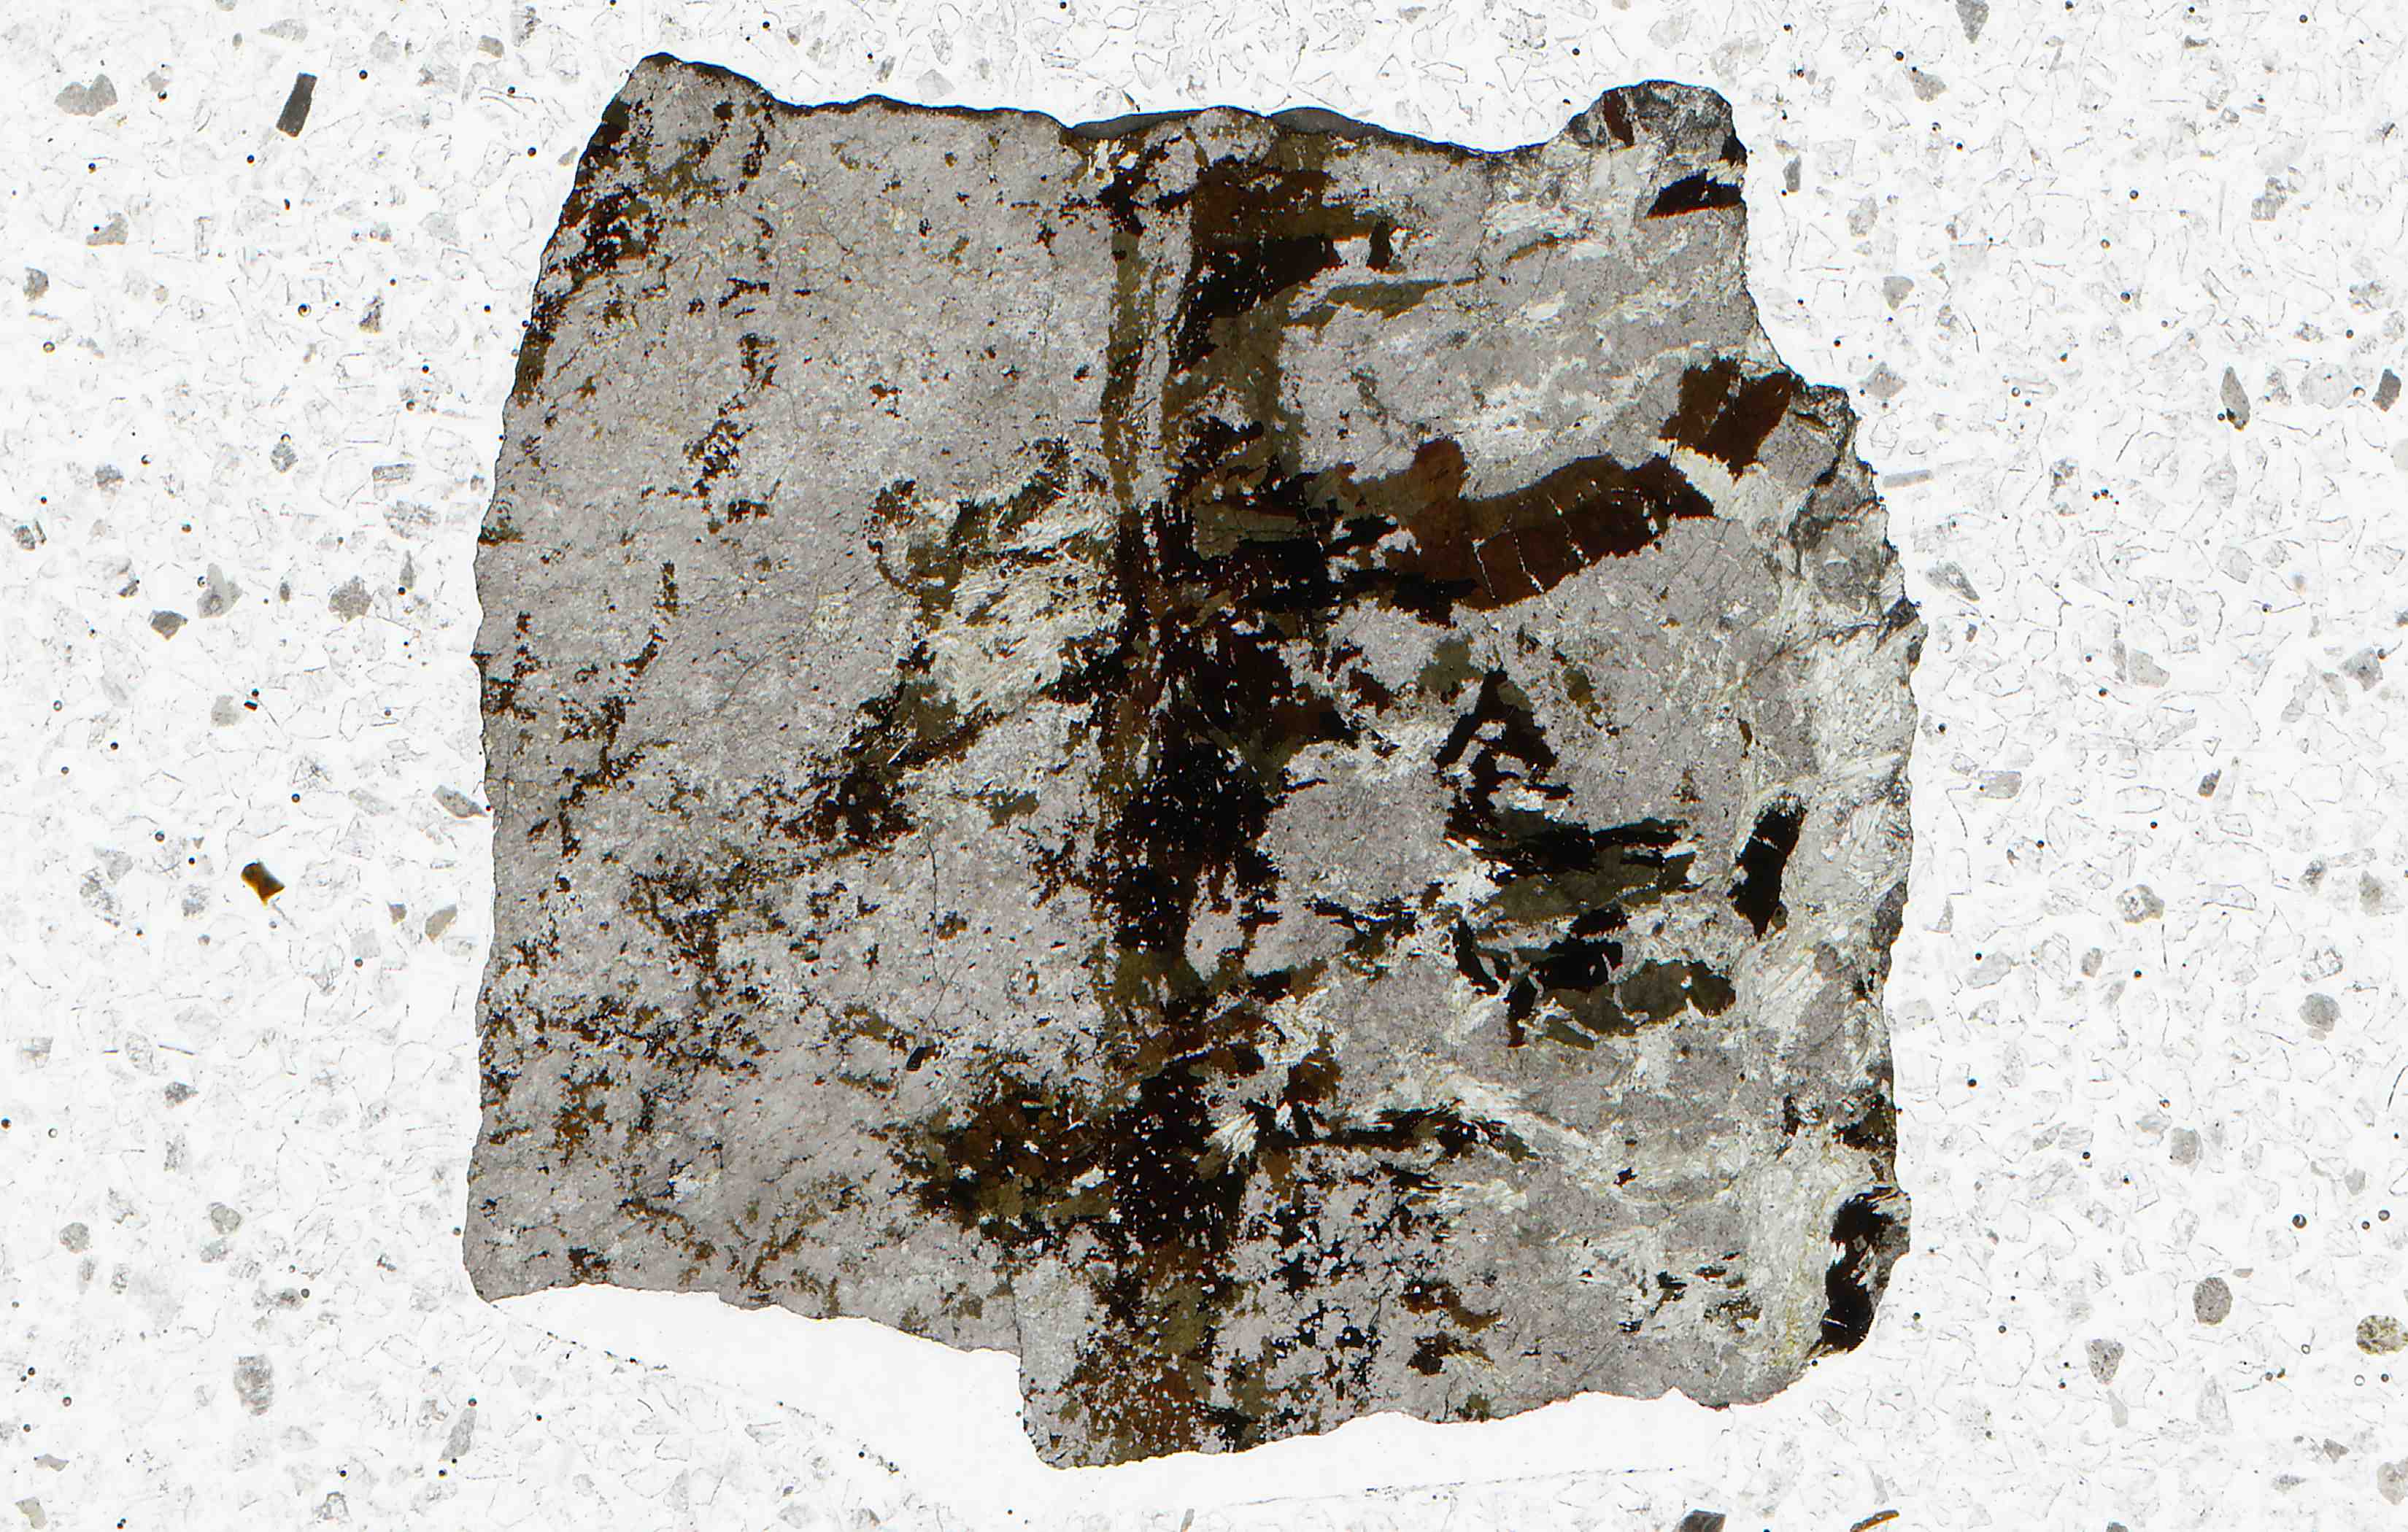 Bastnas Sweden ferri-allanite and cerite in thin section